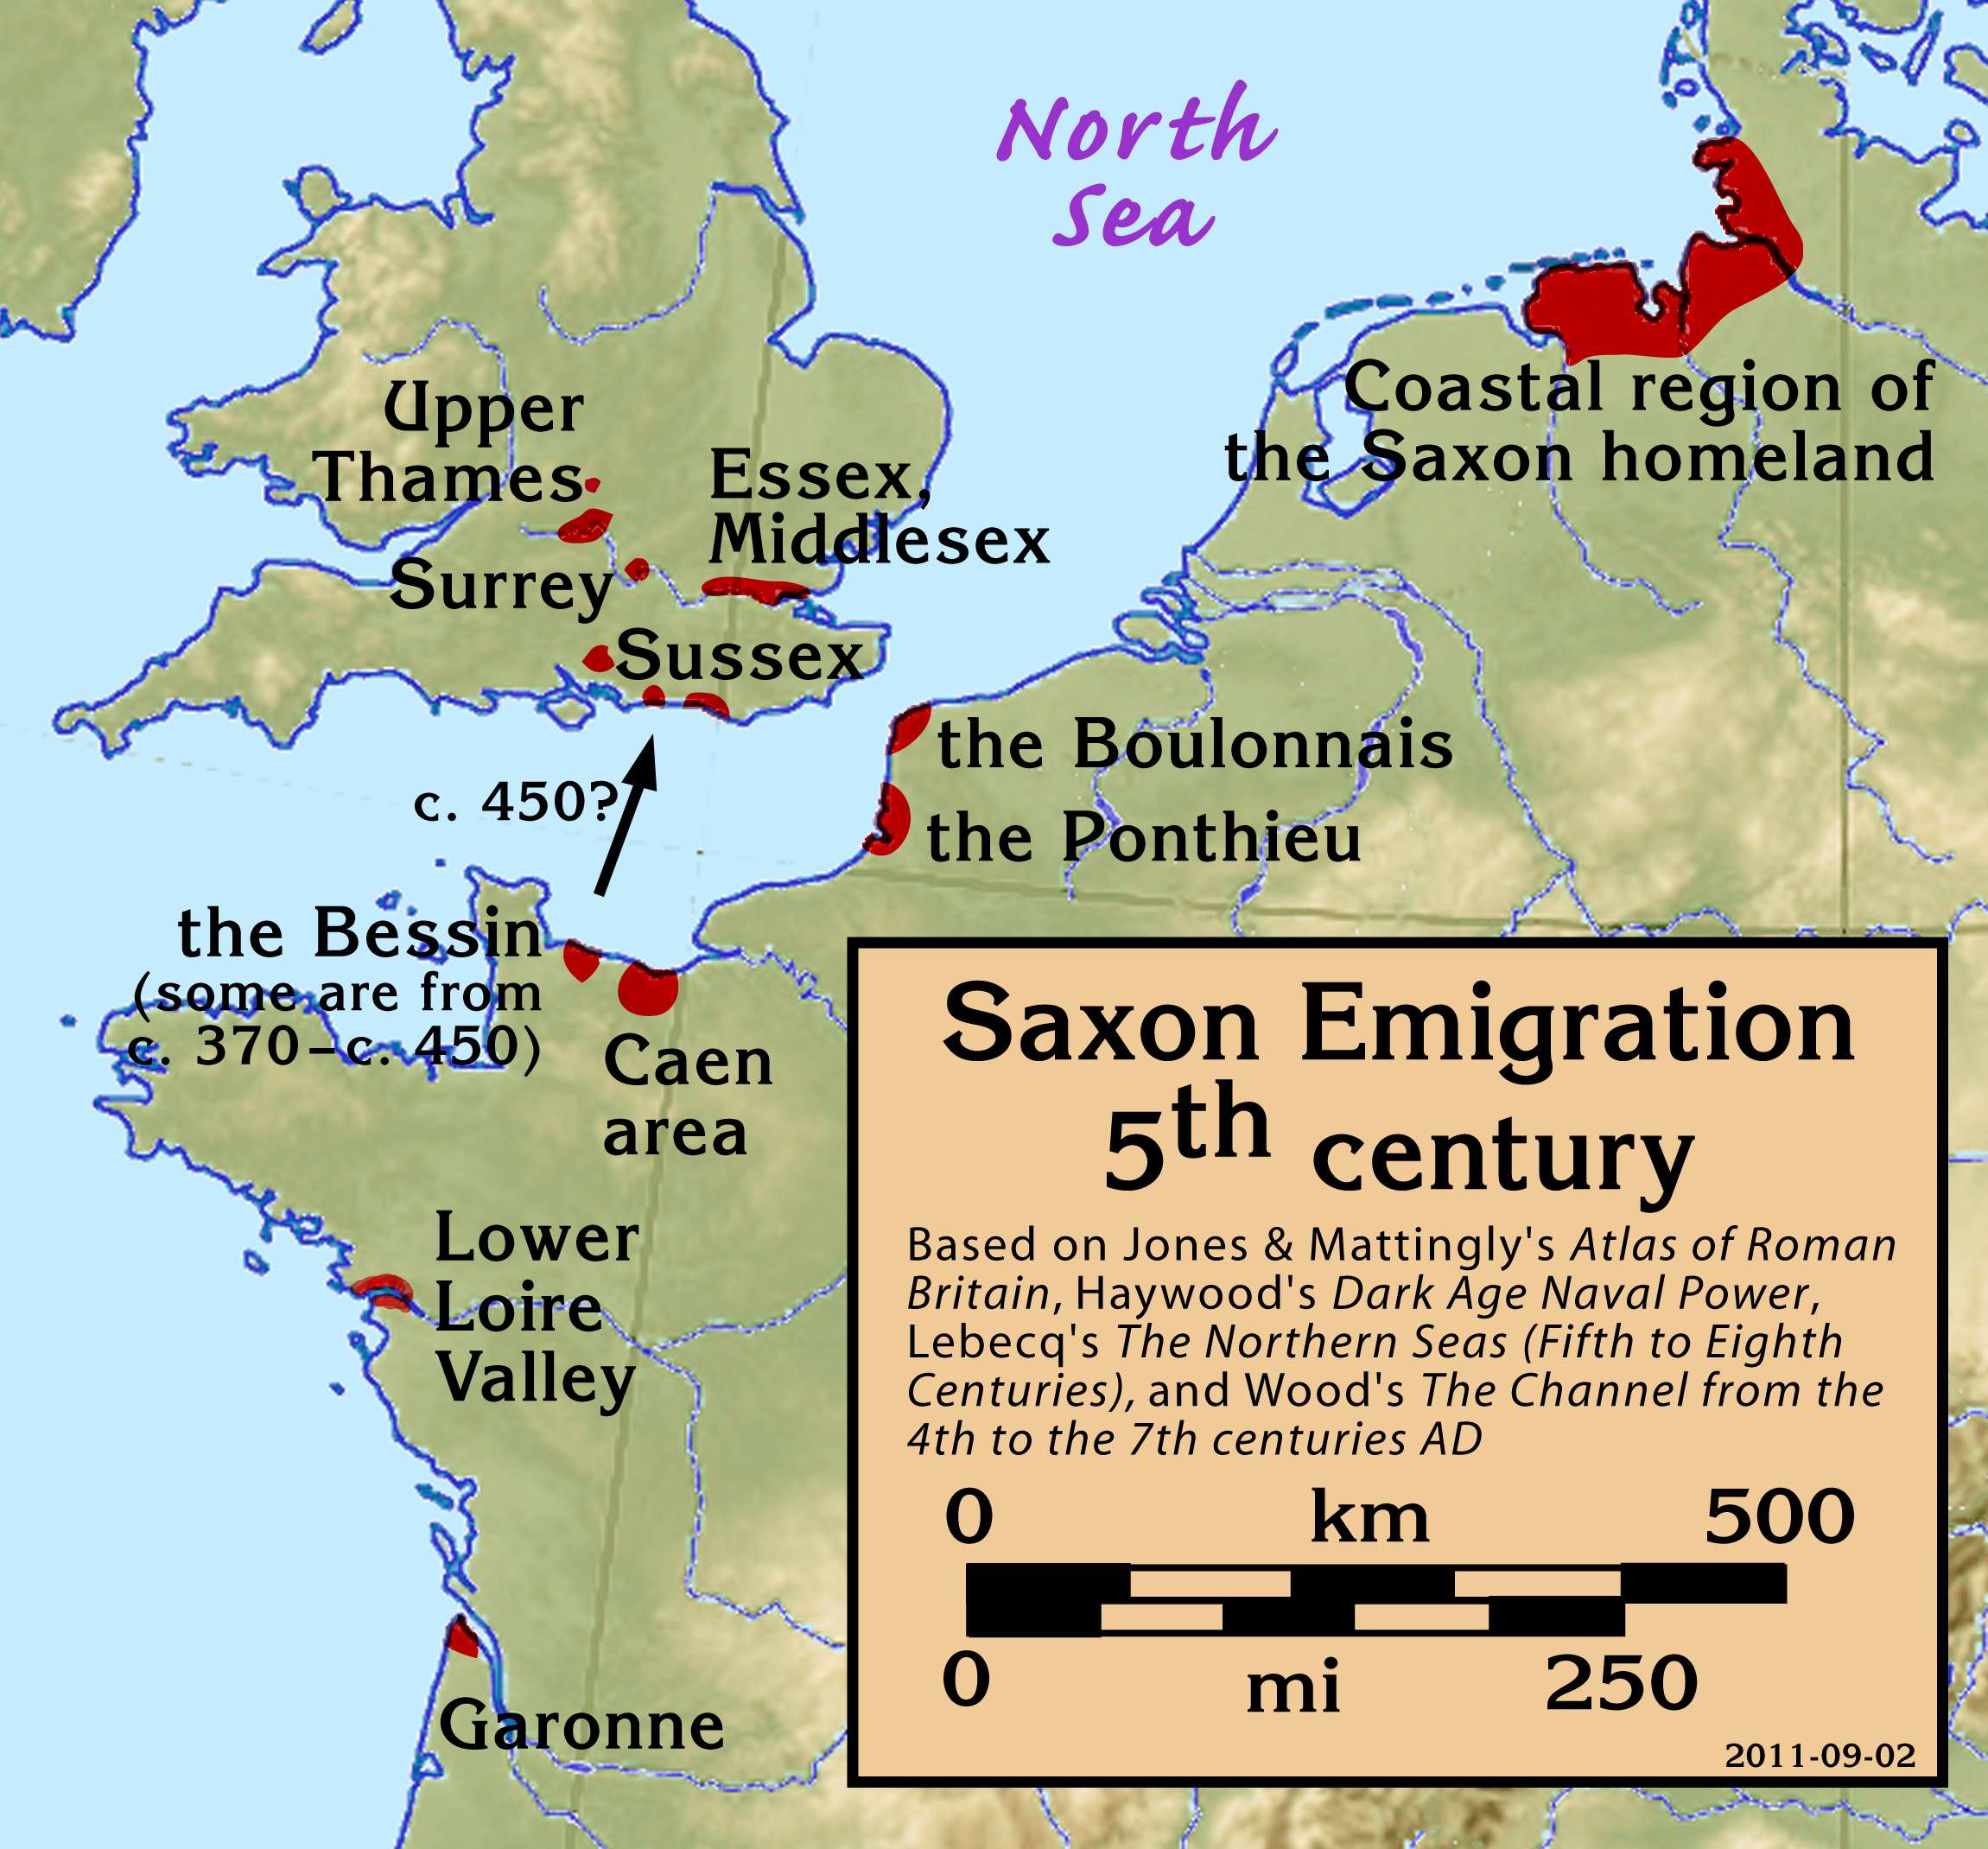 Σαξωνική μετανάστευση, 5ος αιώνας μ.Χ.